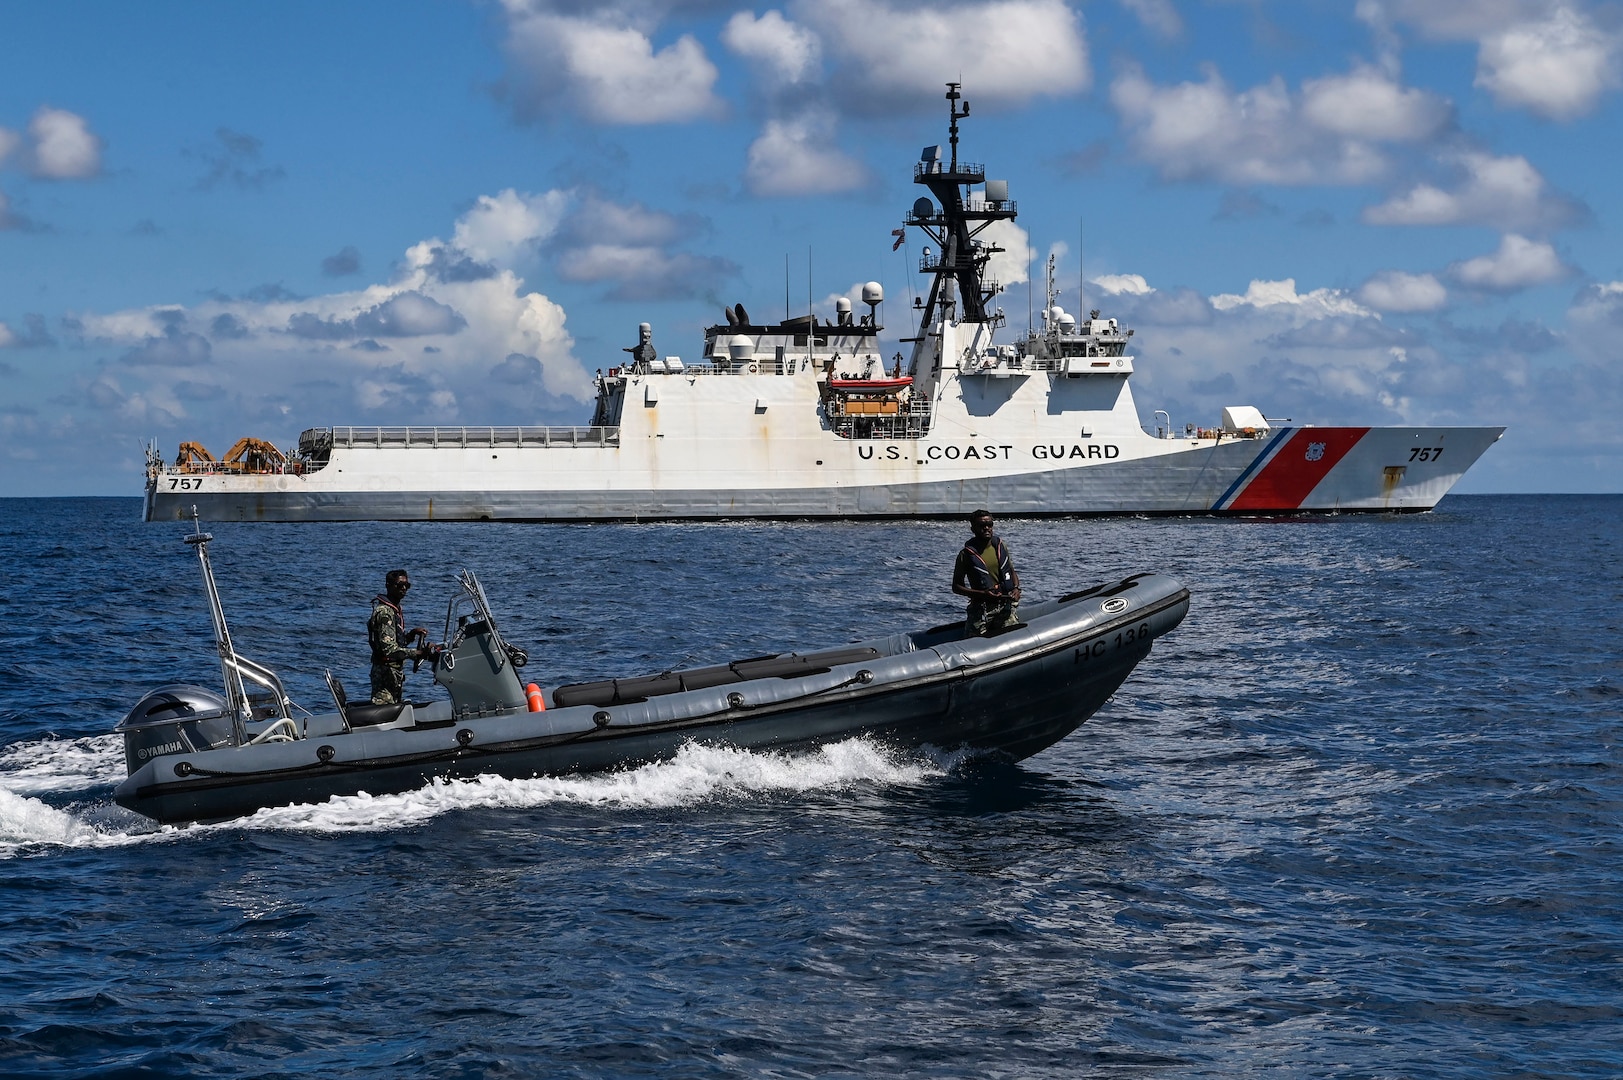 First U.S. Coast Guard Cutter Visits Maldives Since 2009